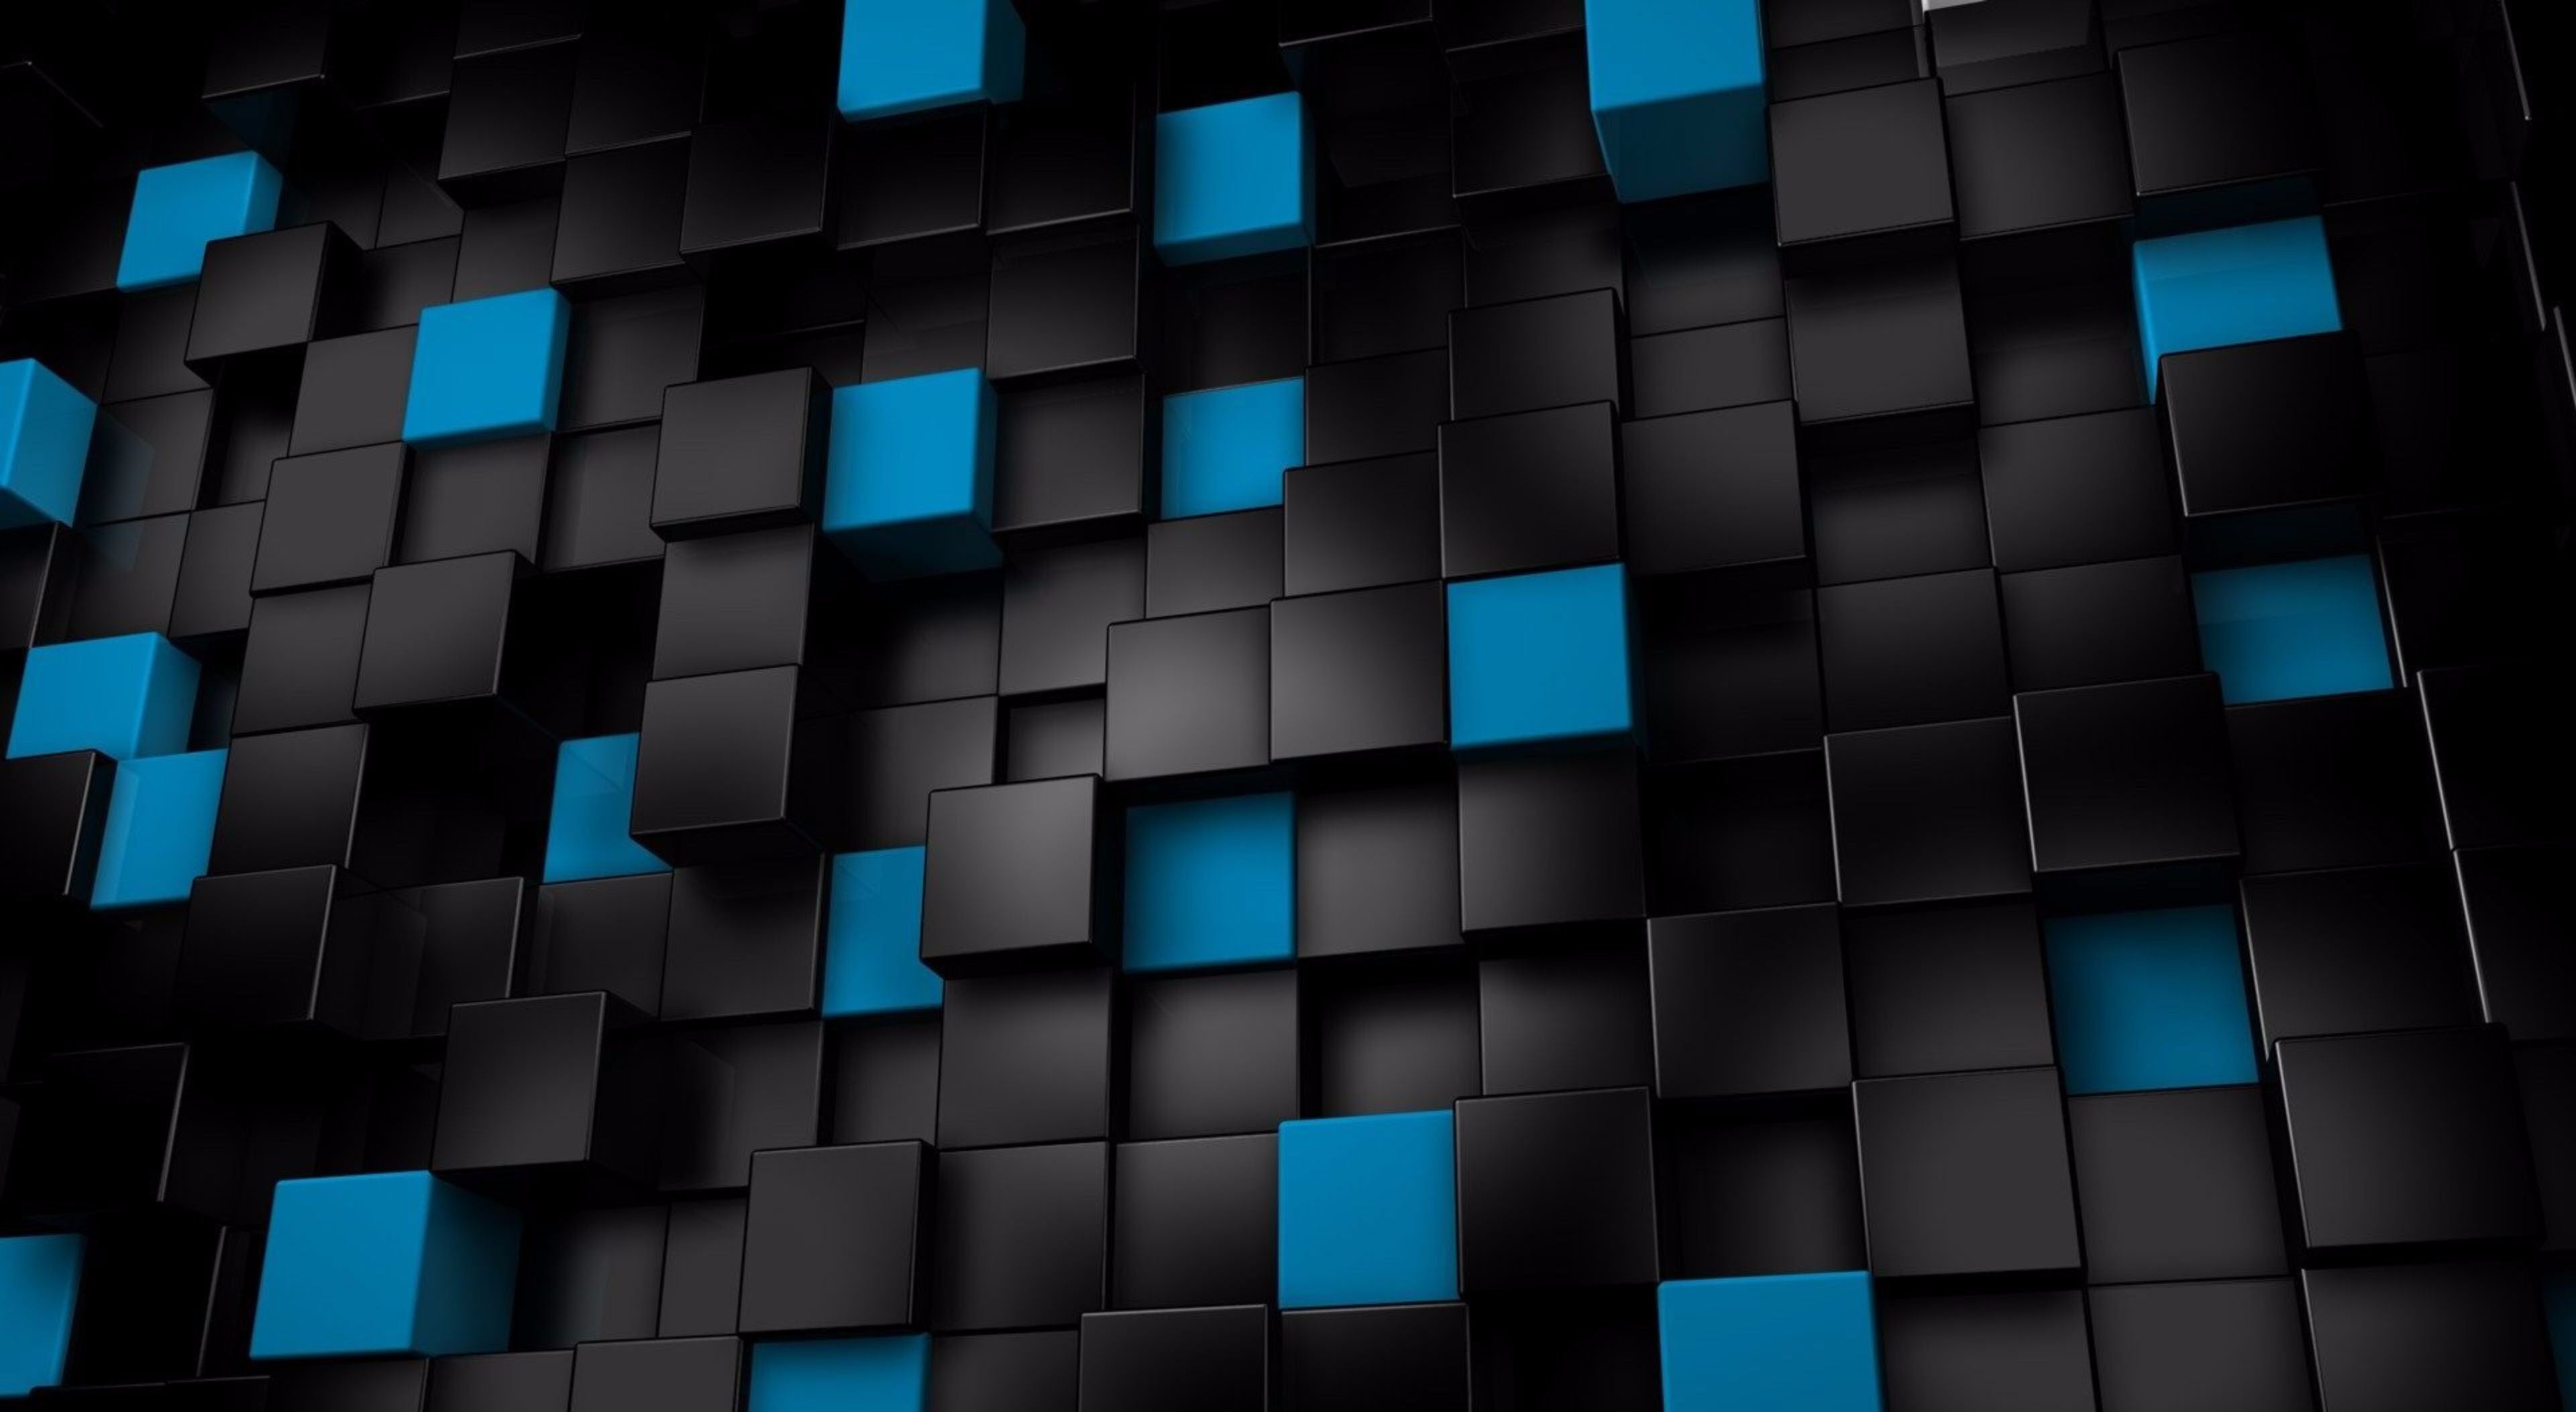 Wallpaper 4k - Hình nền 4k khối hình 3D từ các ô vuông đẹp